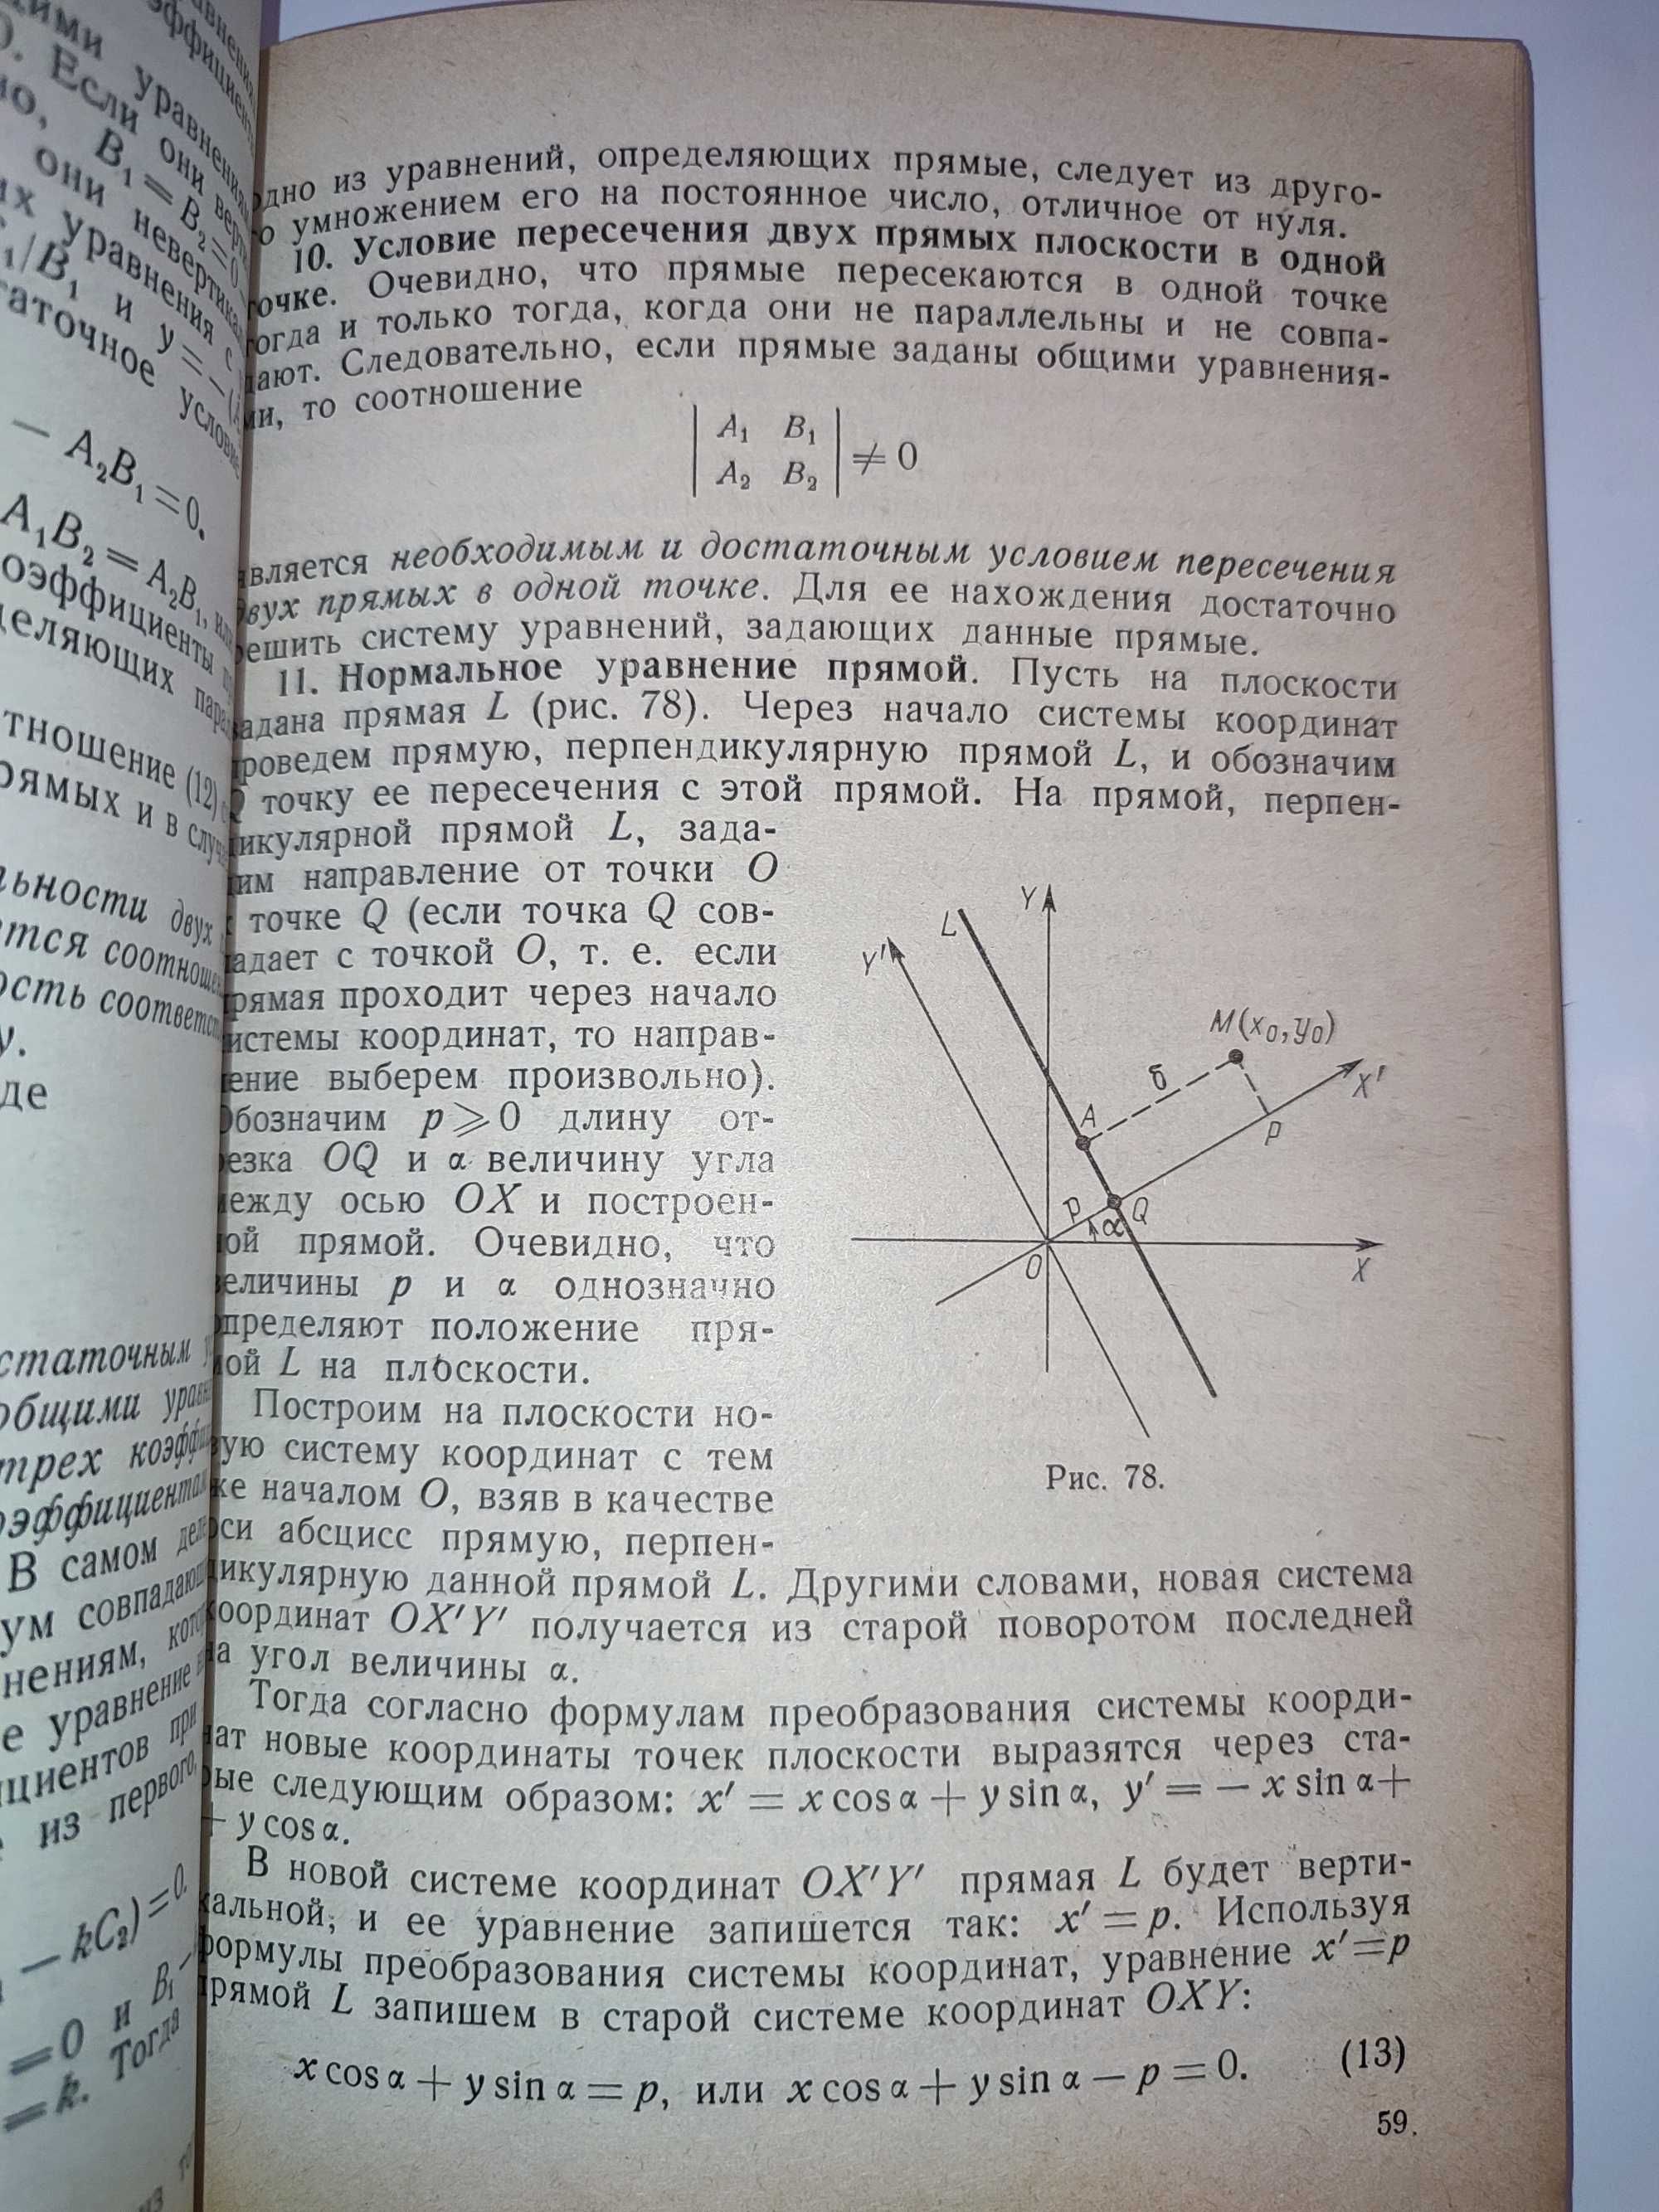 Аналитическая геометрия и векторная алгебра Волков